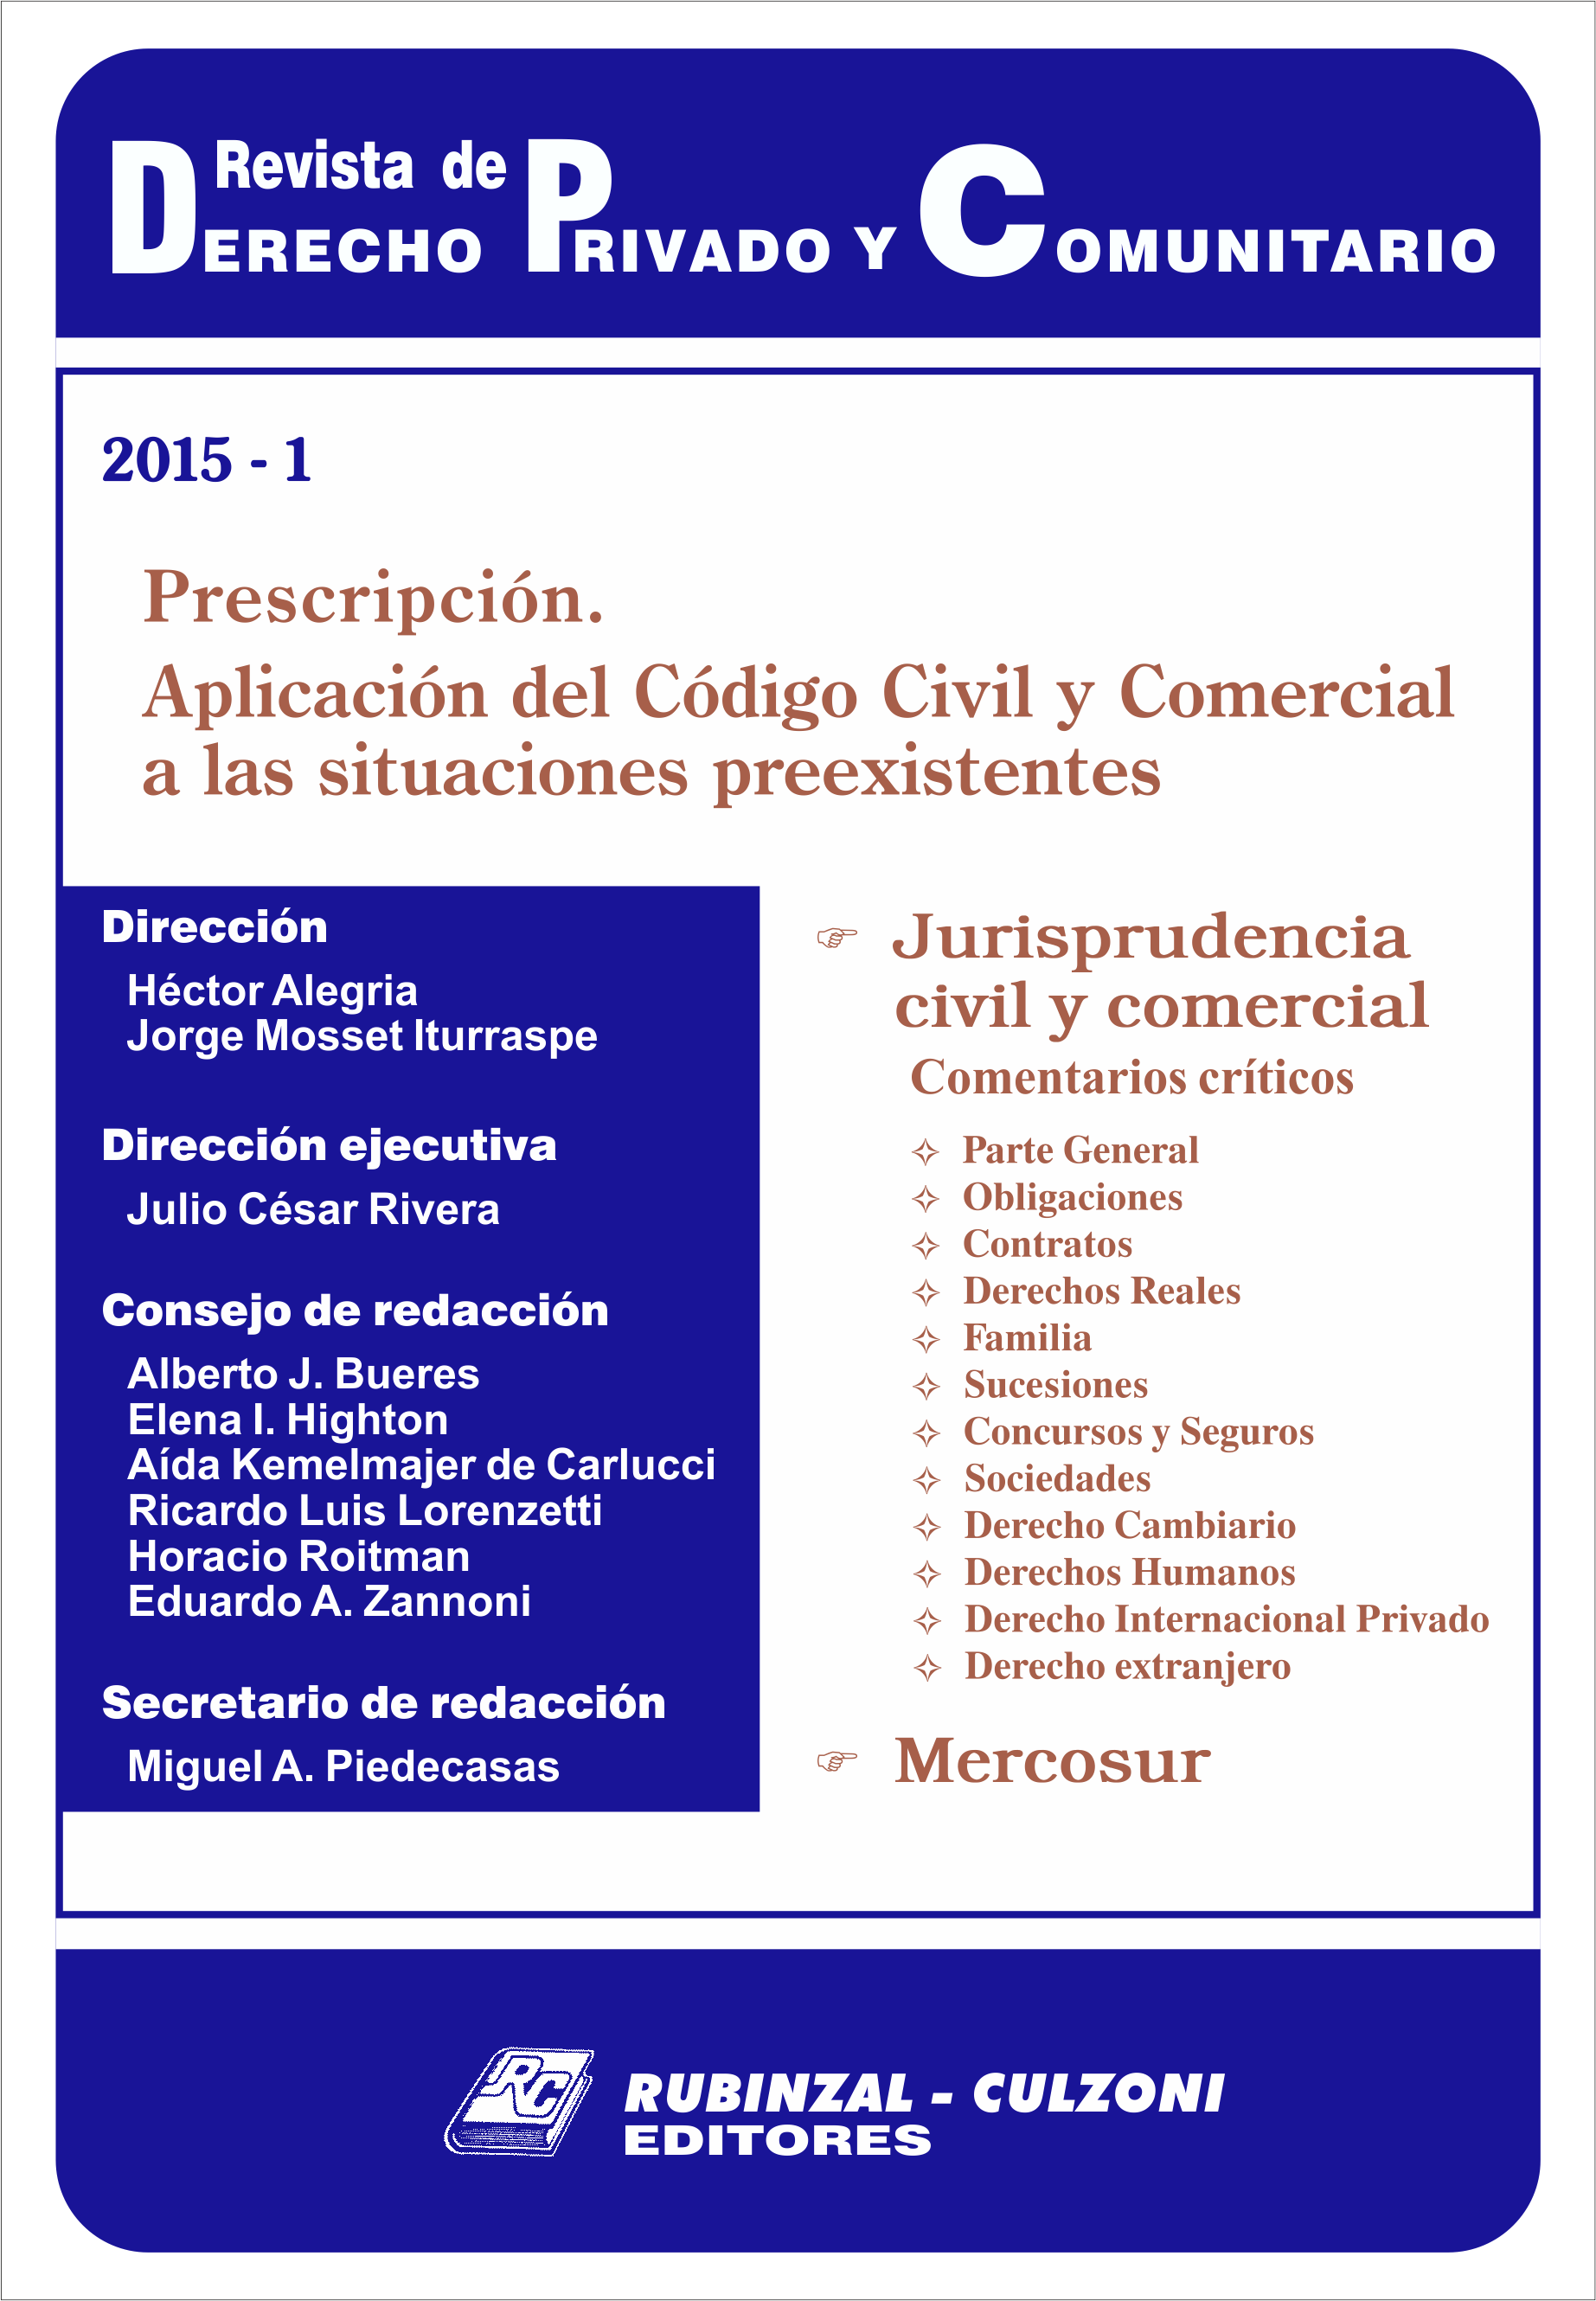 Revista de Derecho Privado y Comunitario - Prescripción. Aplicación del Código Civil y Comercial a las situaciones preexistentes